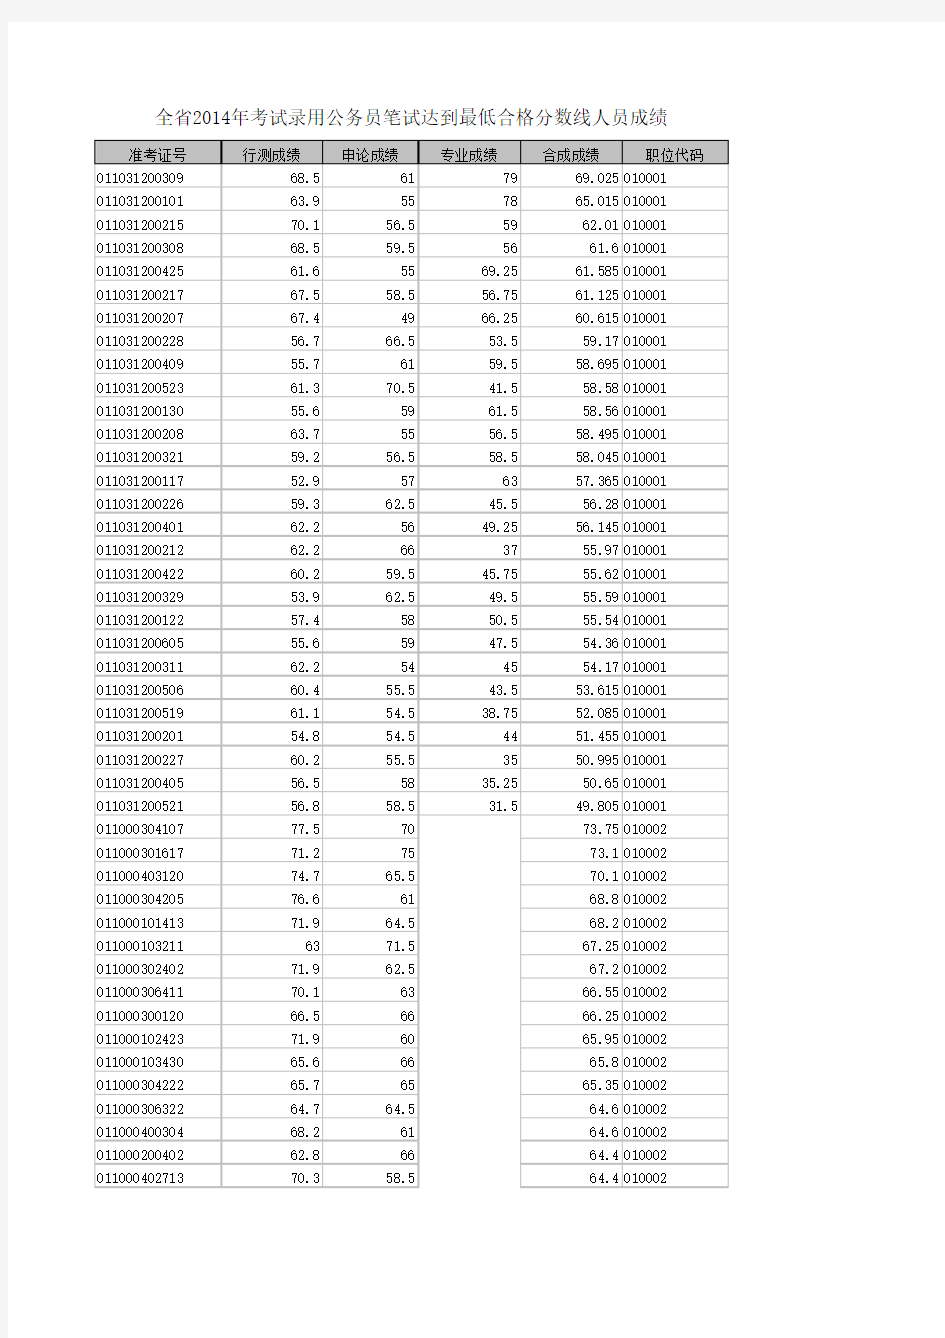 2014安徽省公务员笔试成绩排名